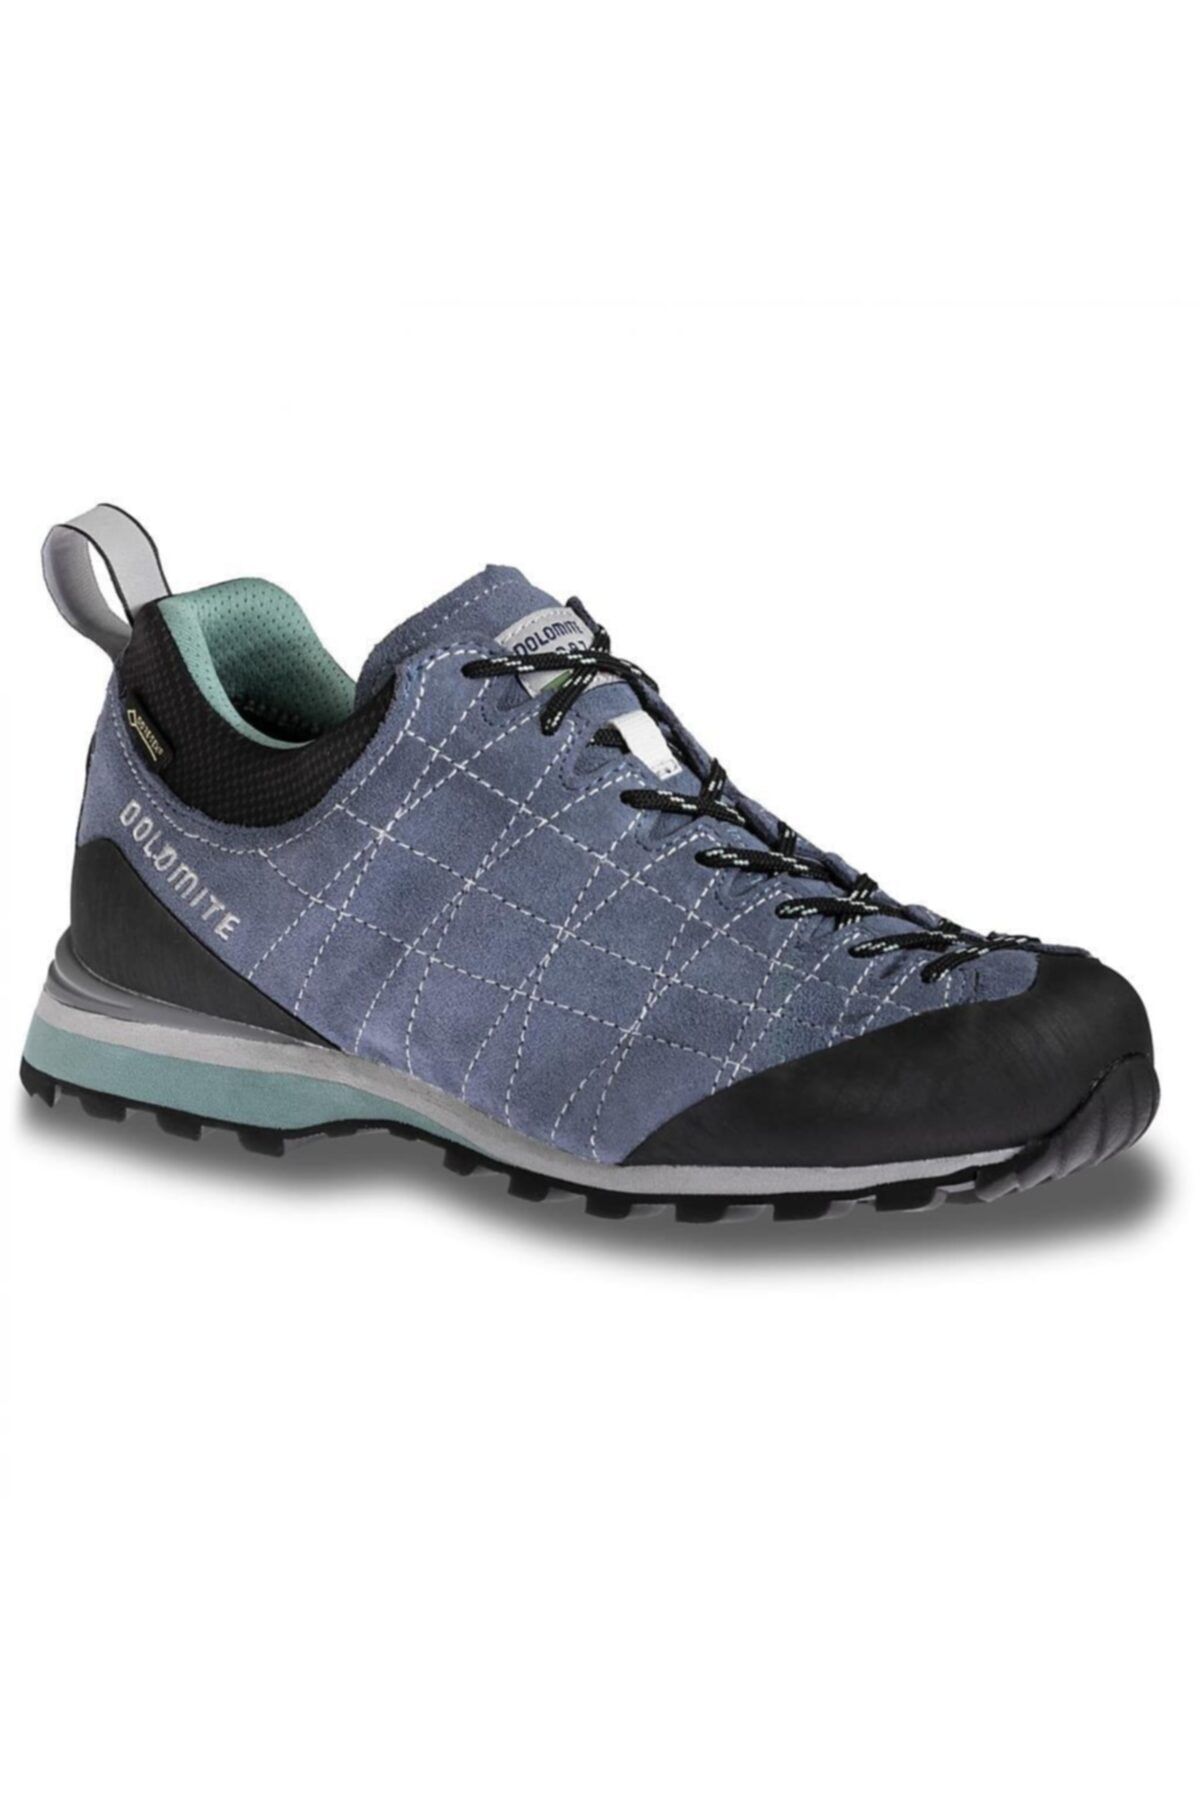 Dolomite Shoe Women Diagonal Gtx Ayakkabı Mavi